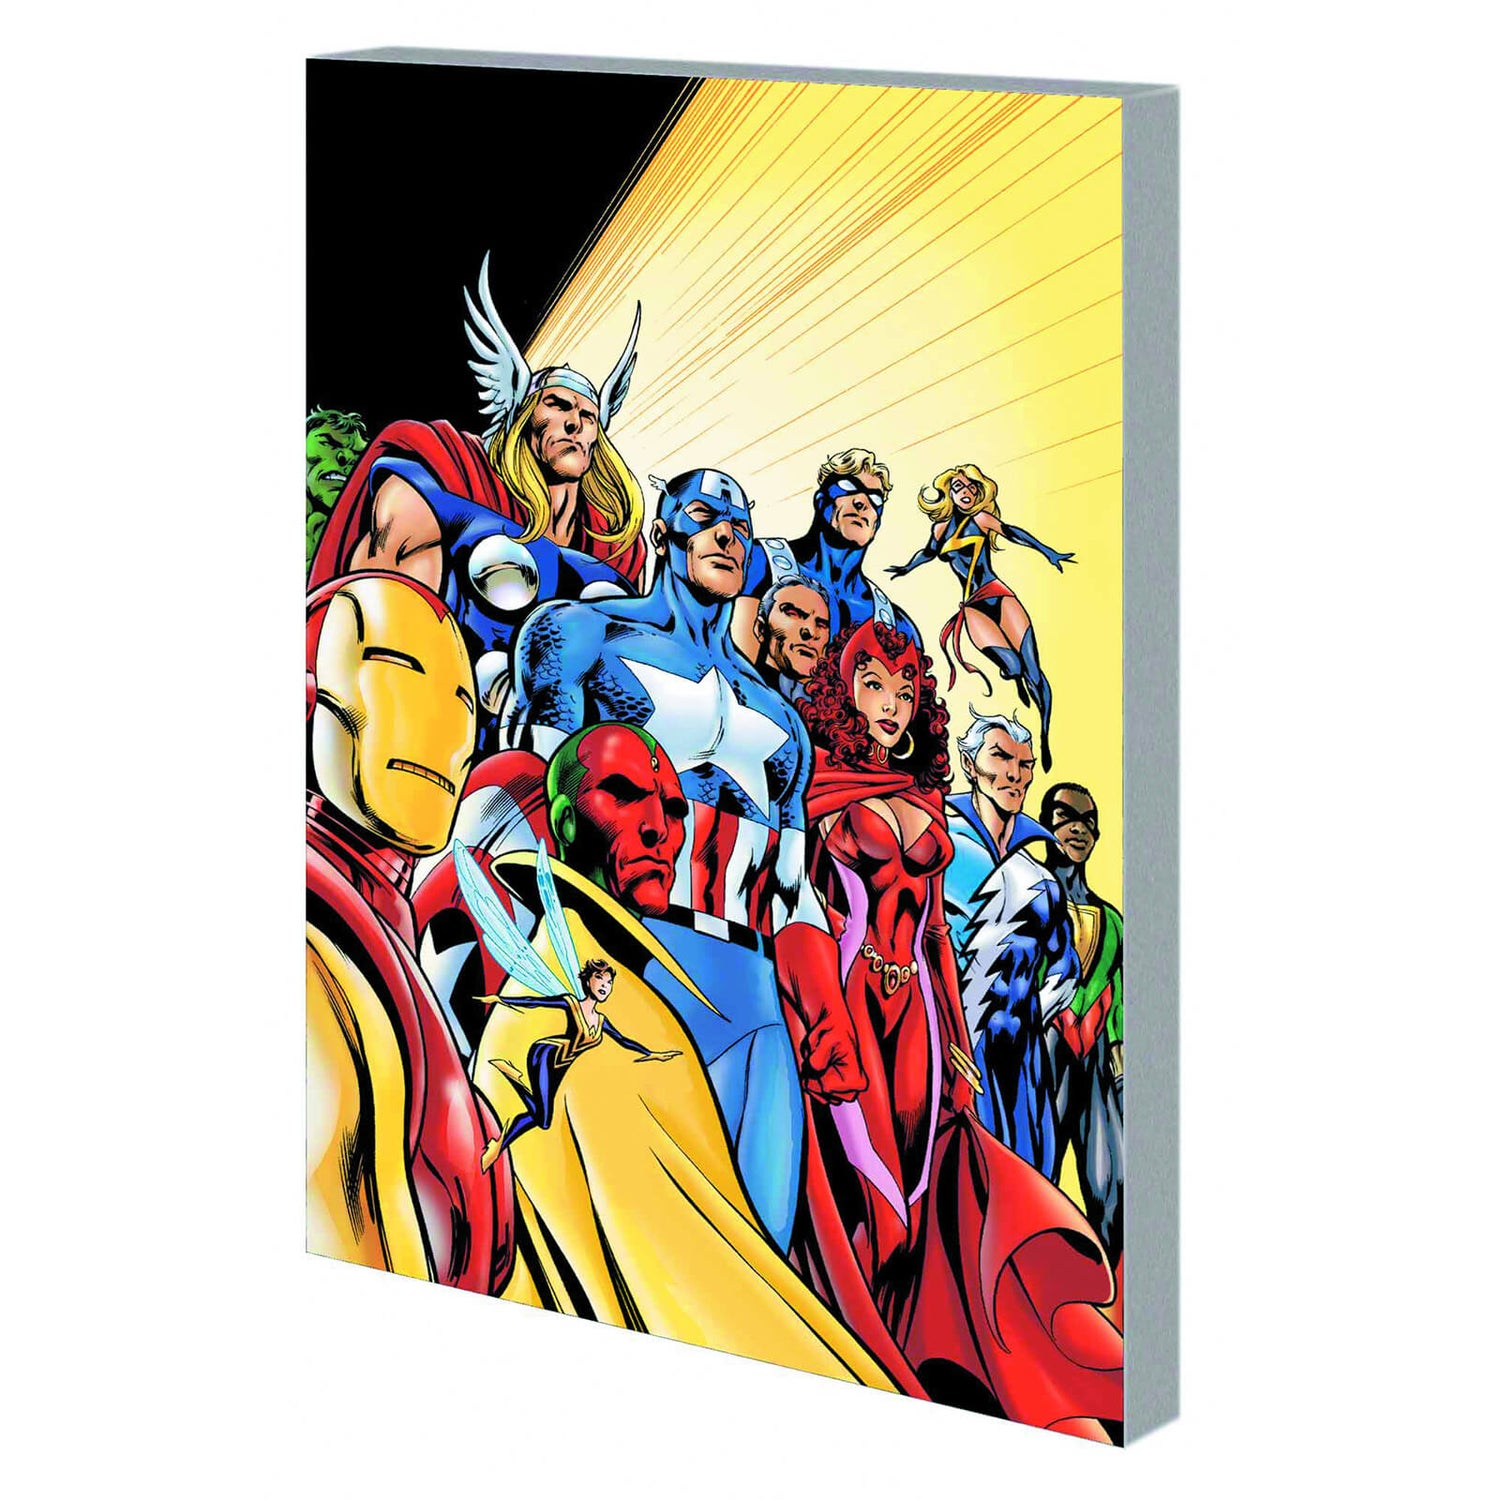 Marvel Avengers Assemble - Vol. 4 Graphic Novel